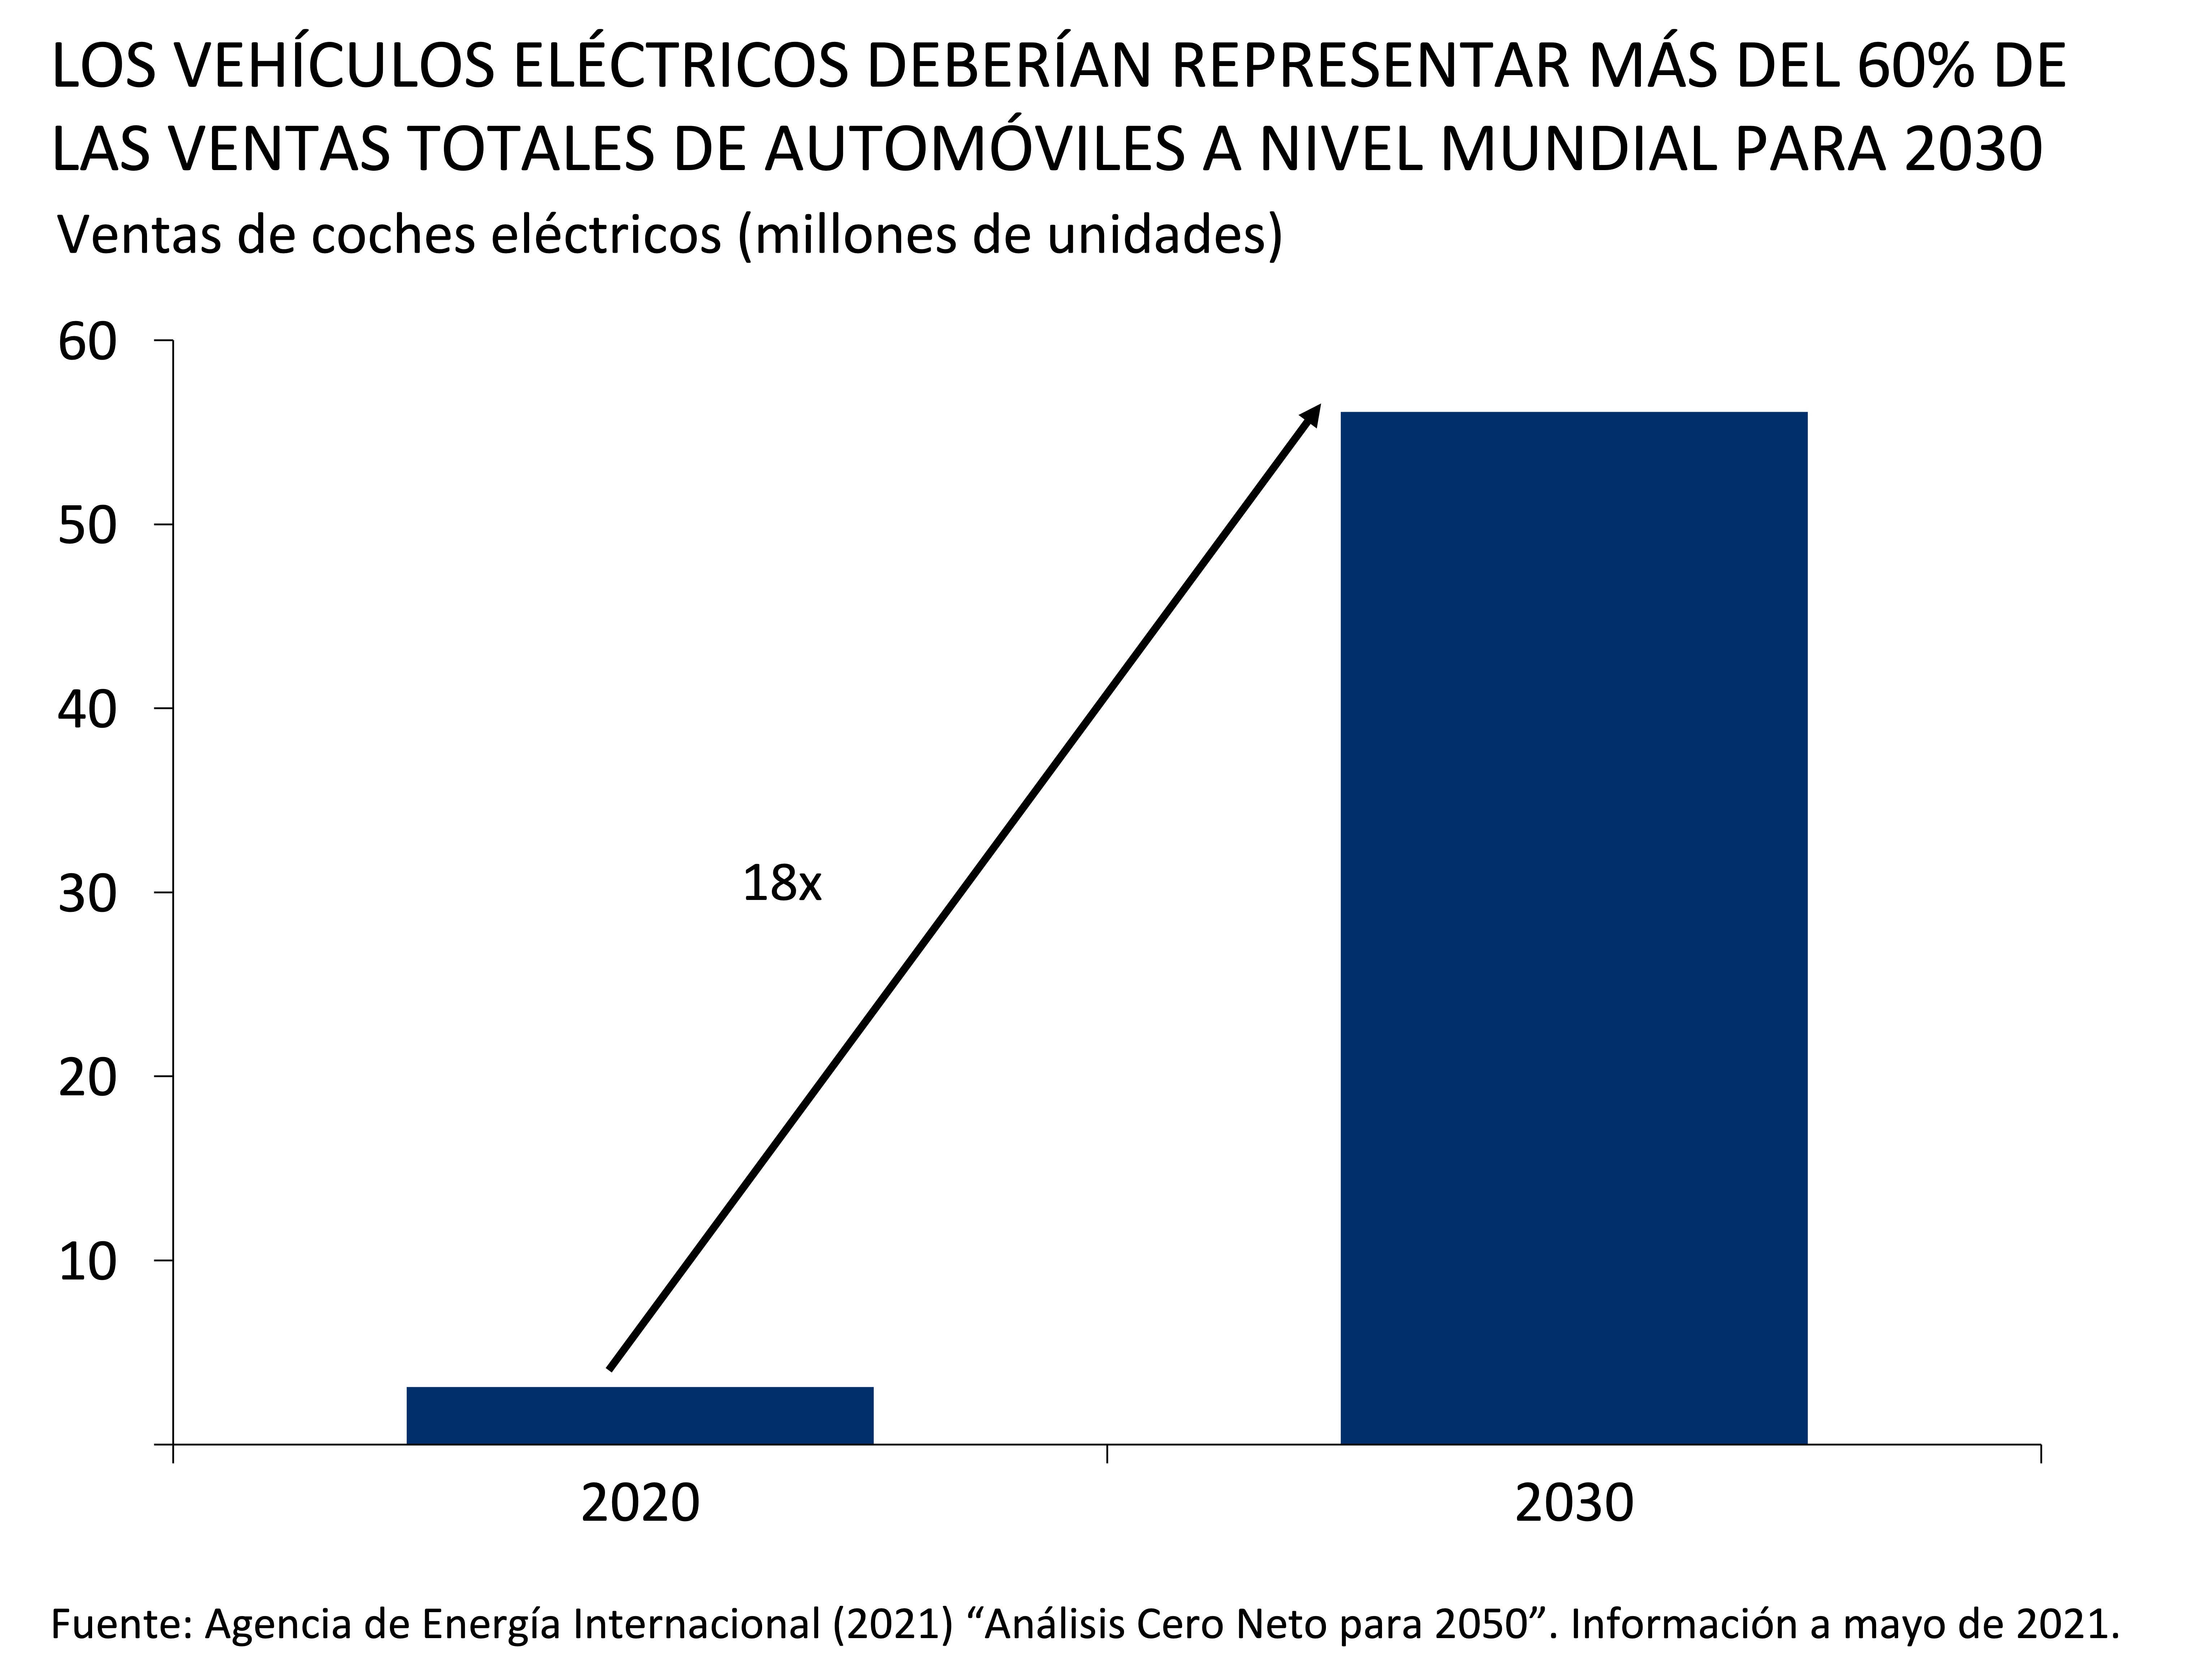 Los vehiculos electricos deberian representar mas del 60% de las ventas totales de automoviles a nivel mundial para 2030